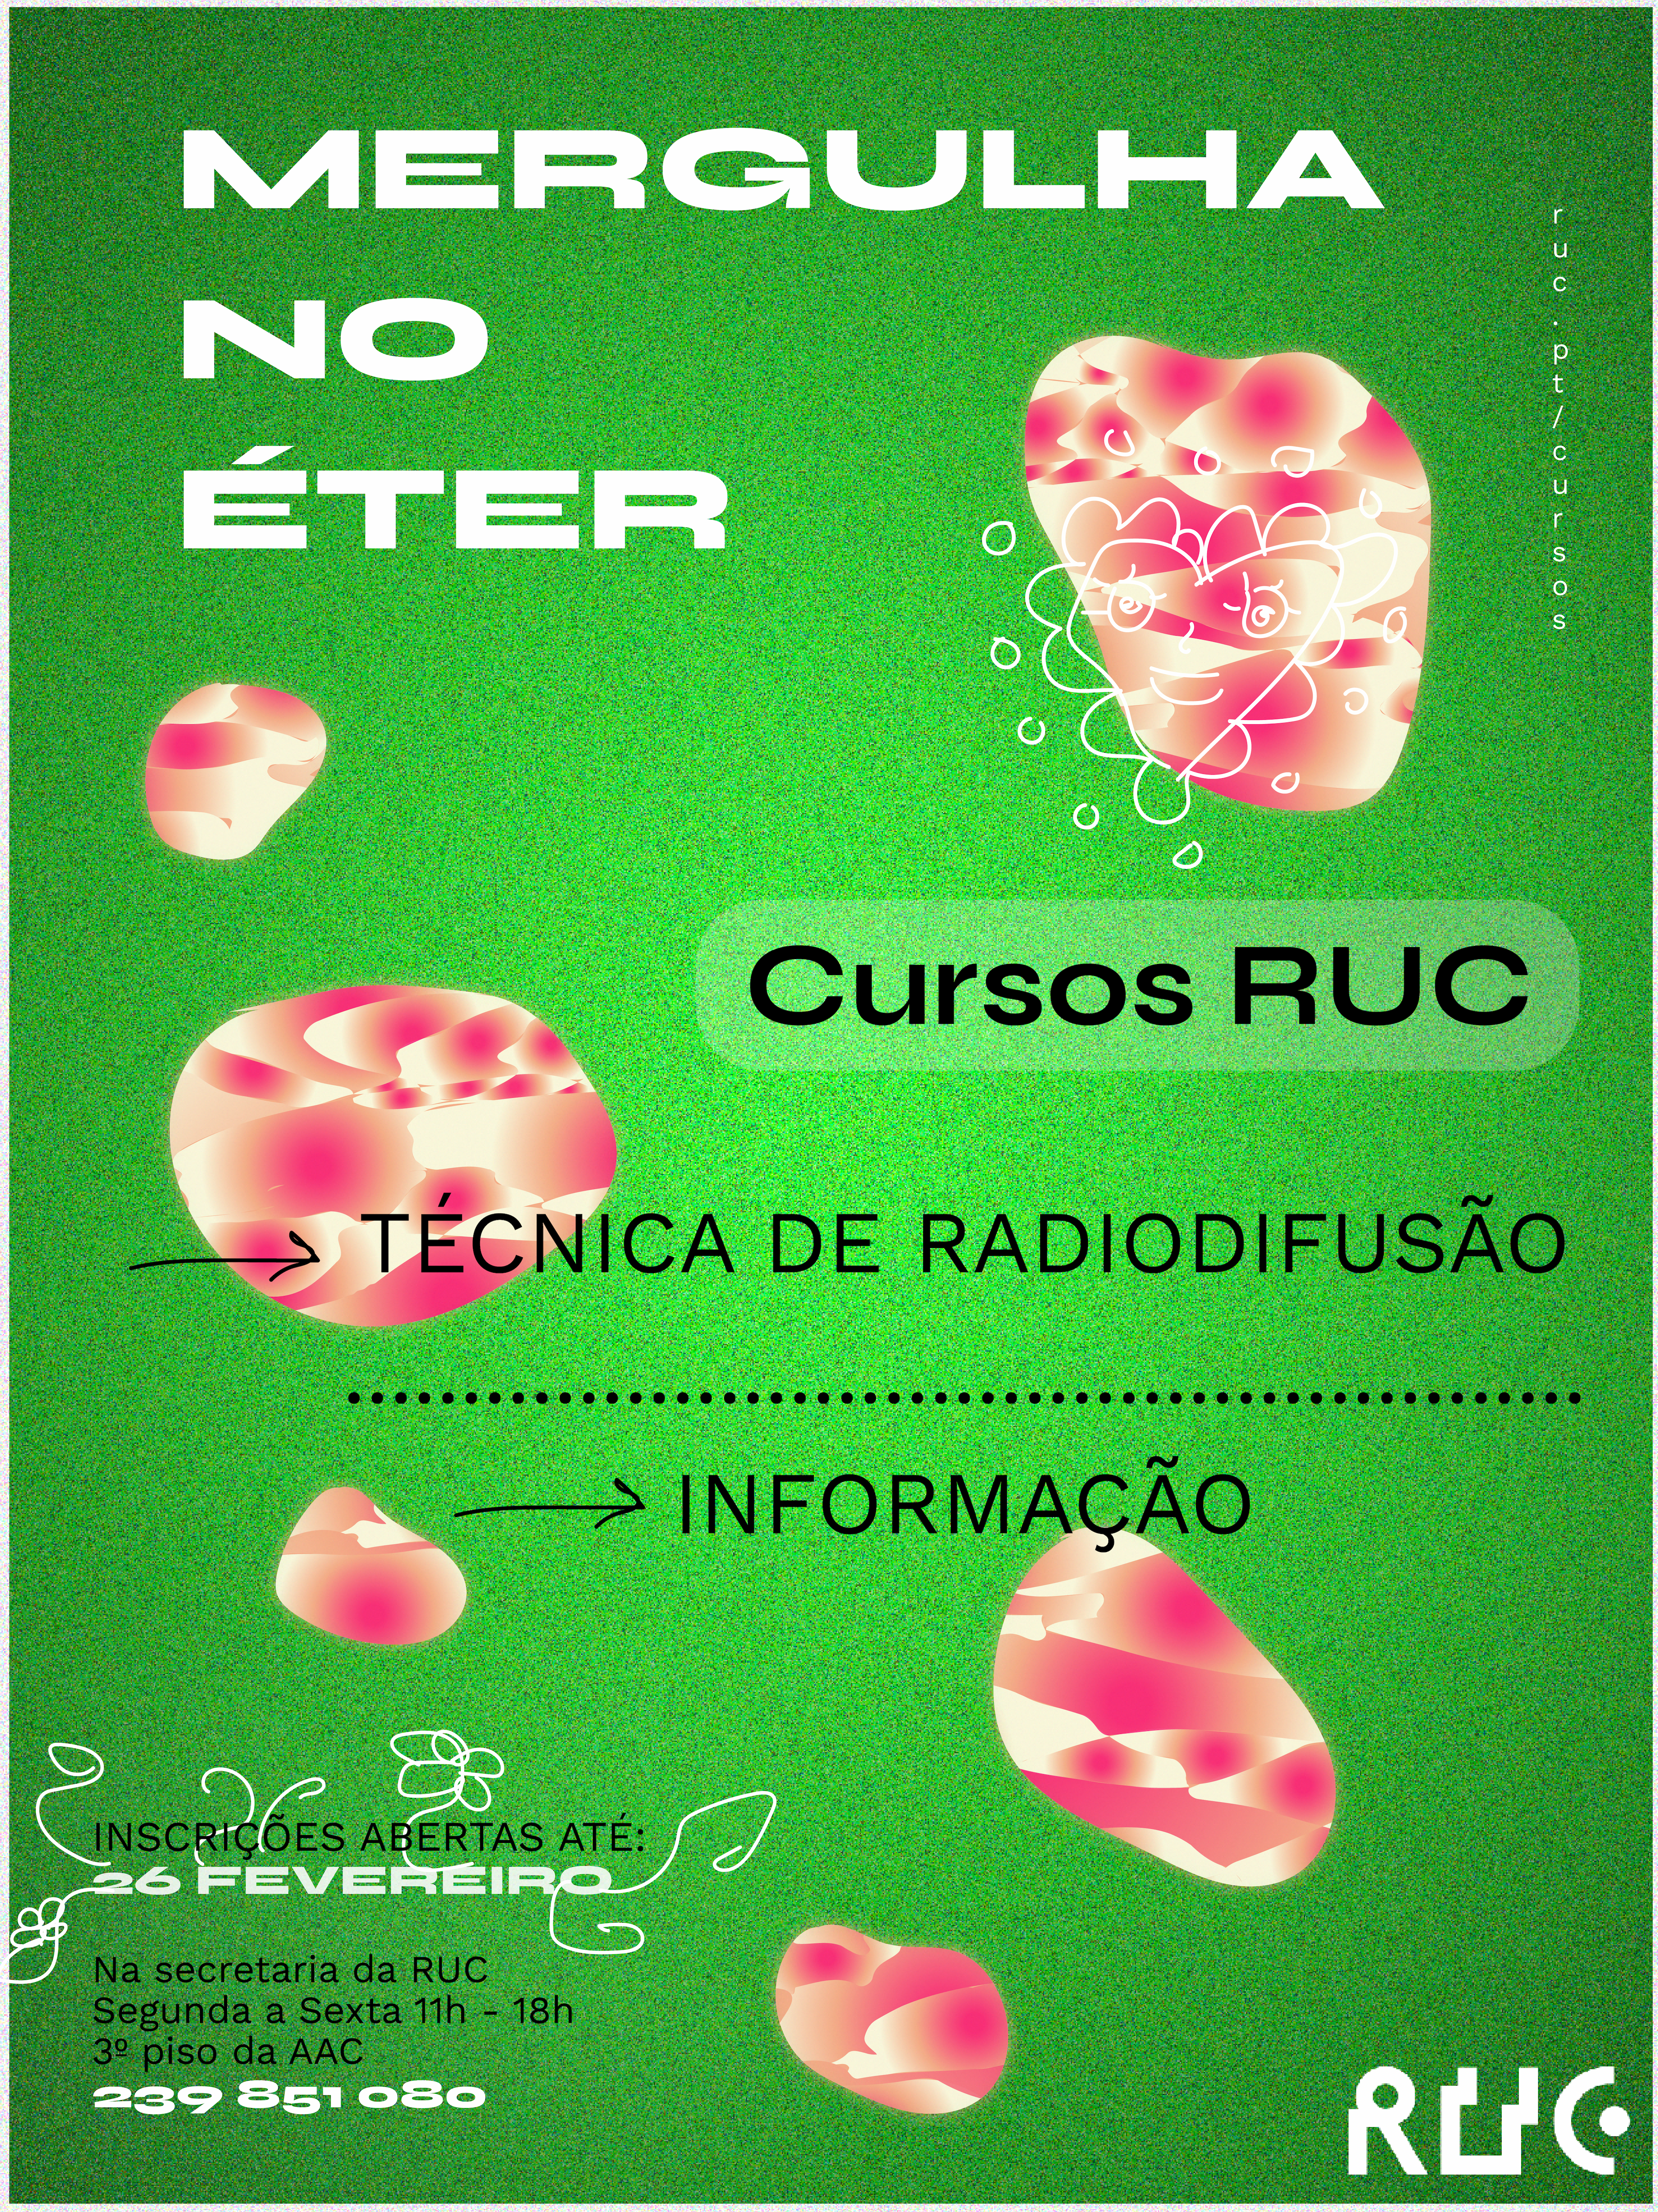 Cursos RUC